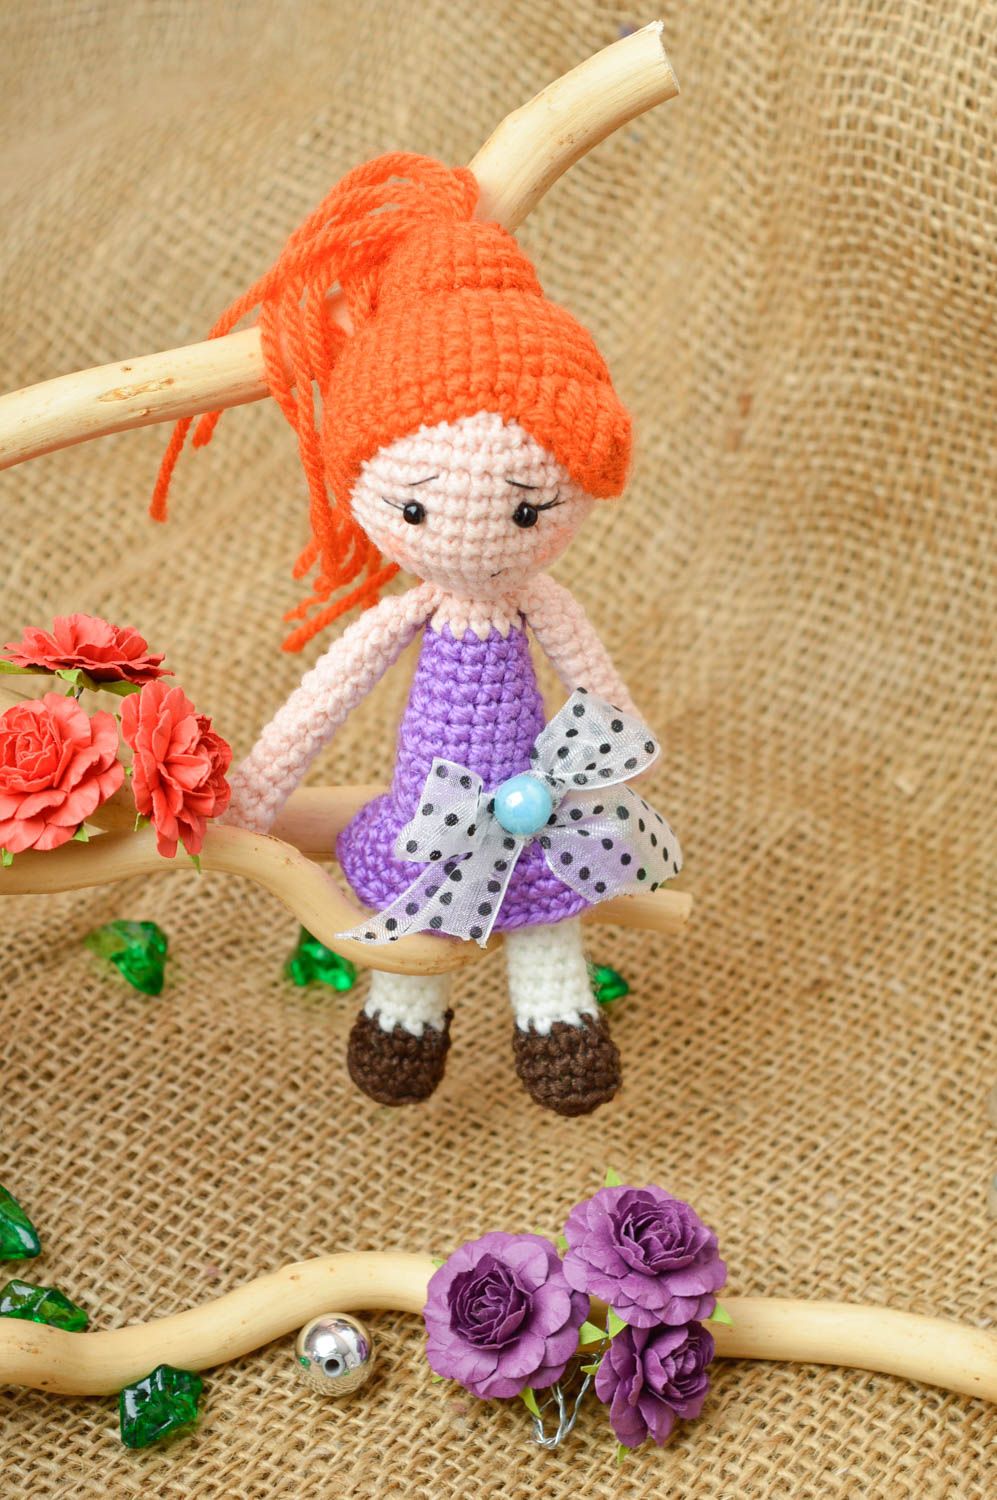 Мягкая игрушка кукла ручной работы рыжая девочка кукла крючком в лиловом платье фото 1